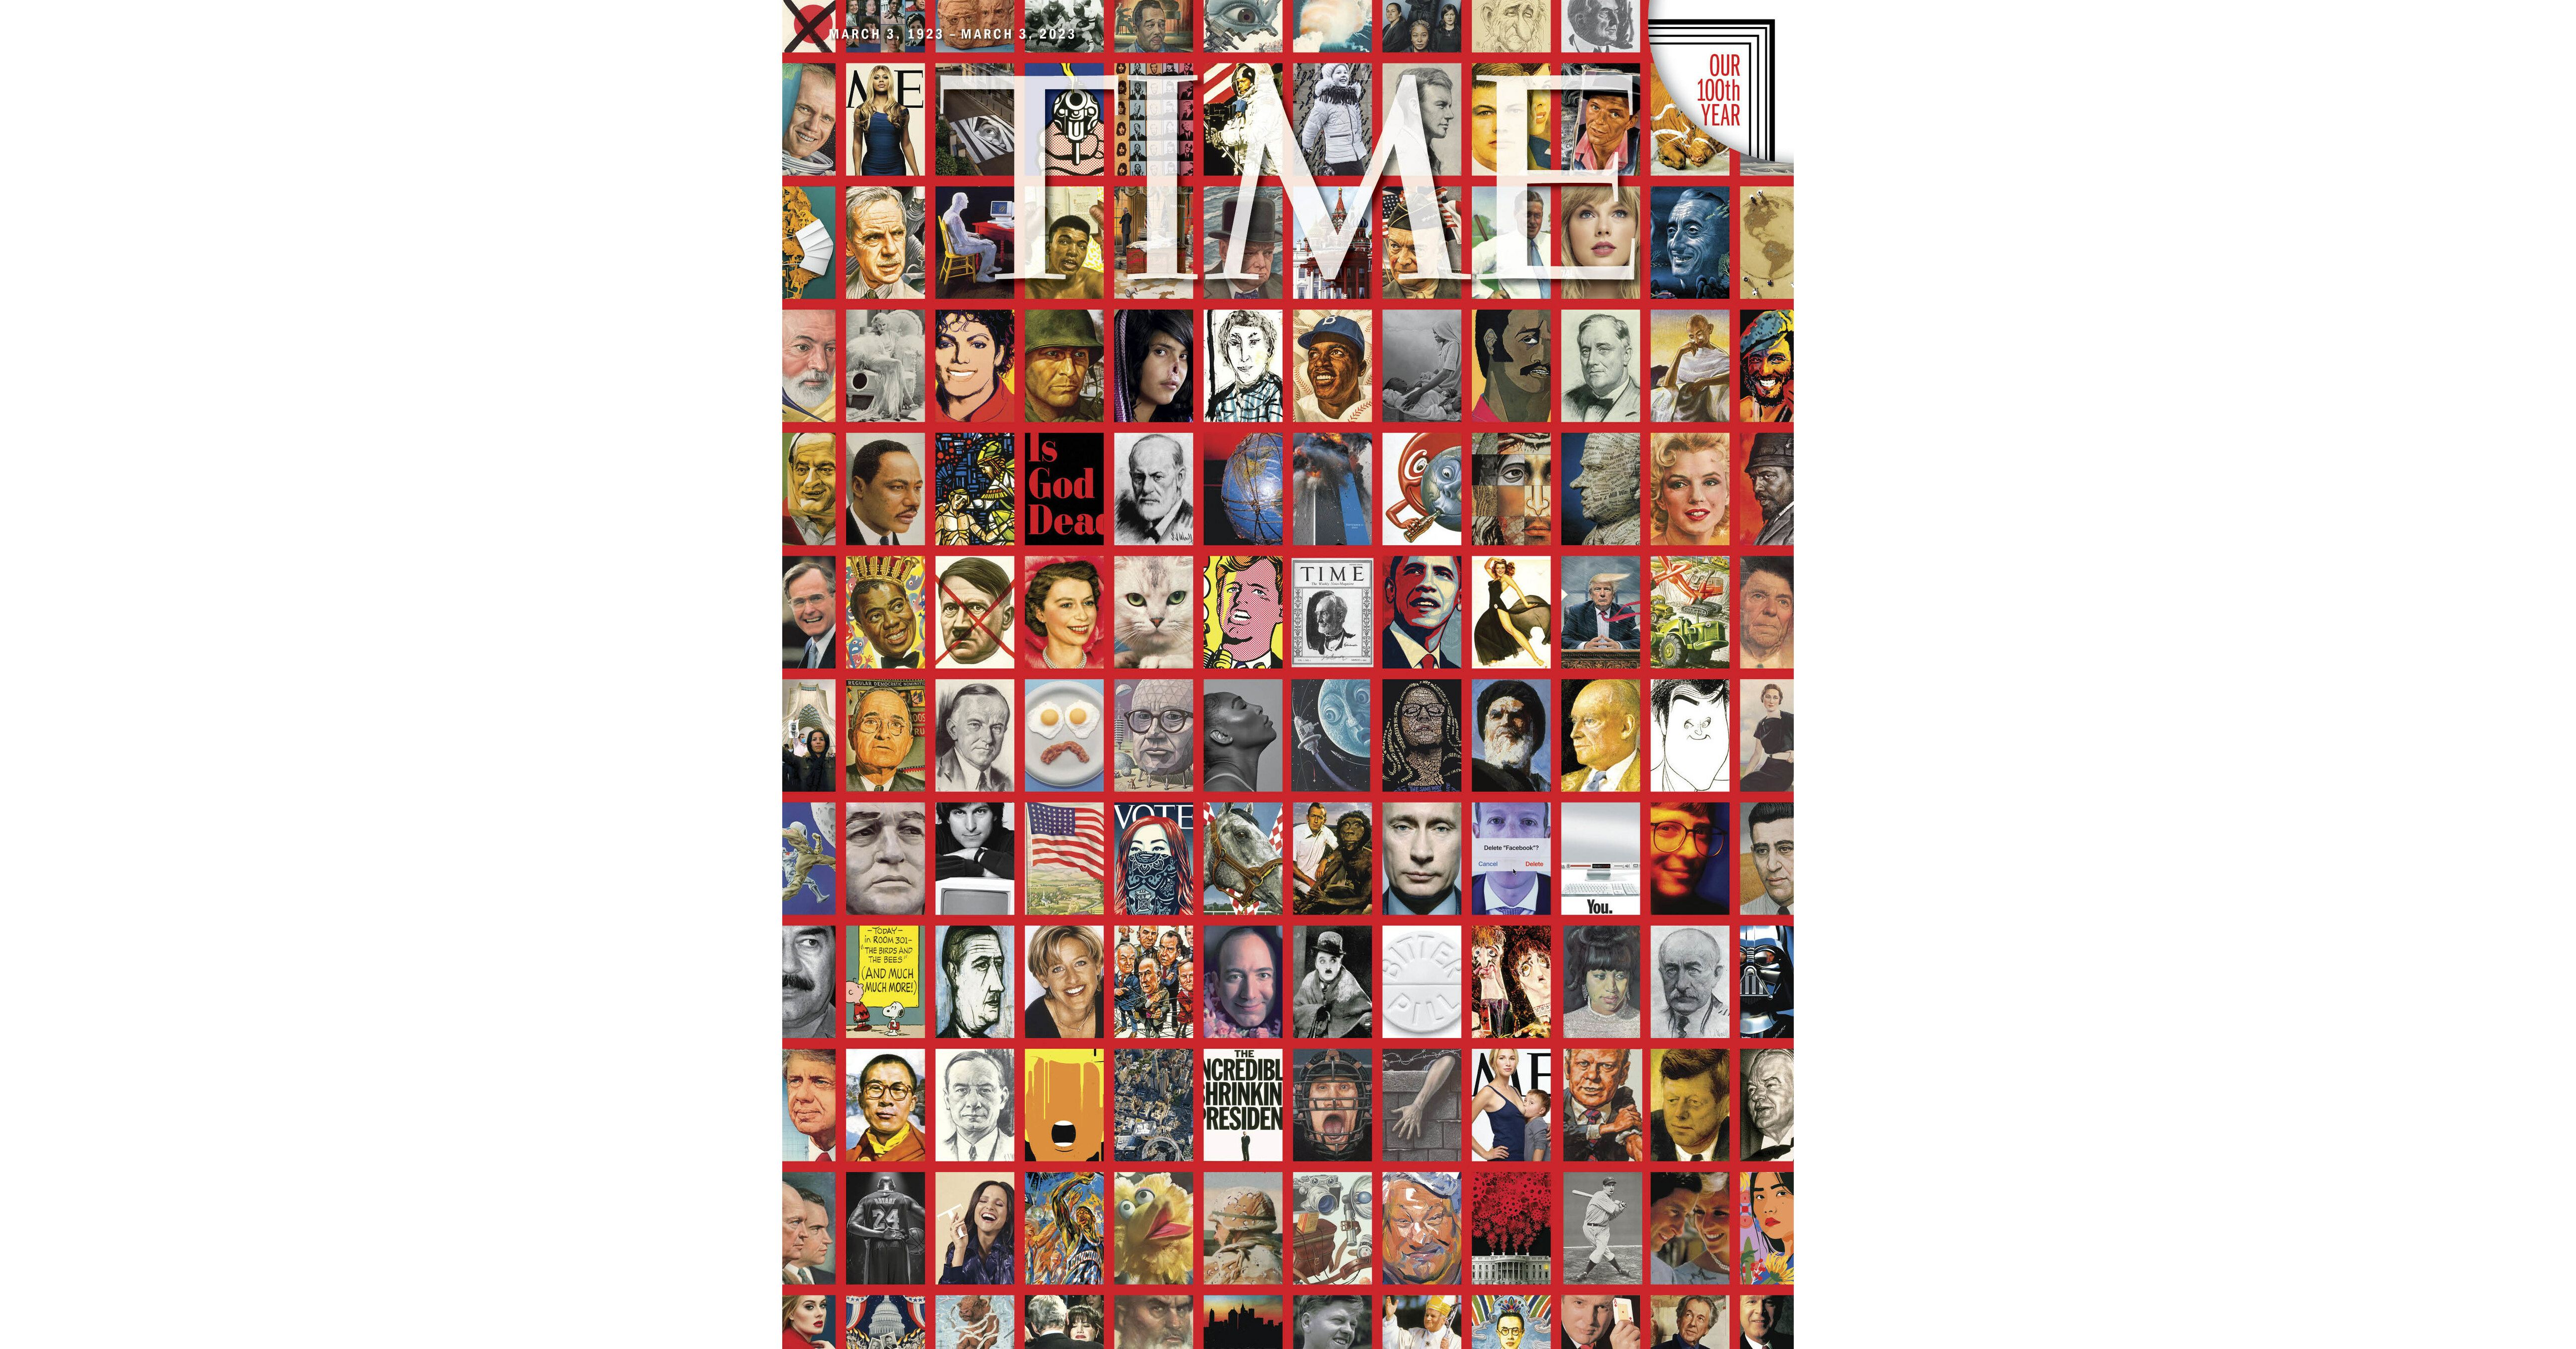 time magazine cover transgender